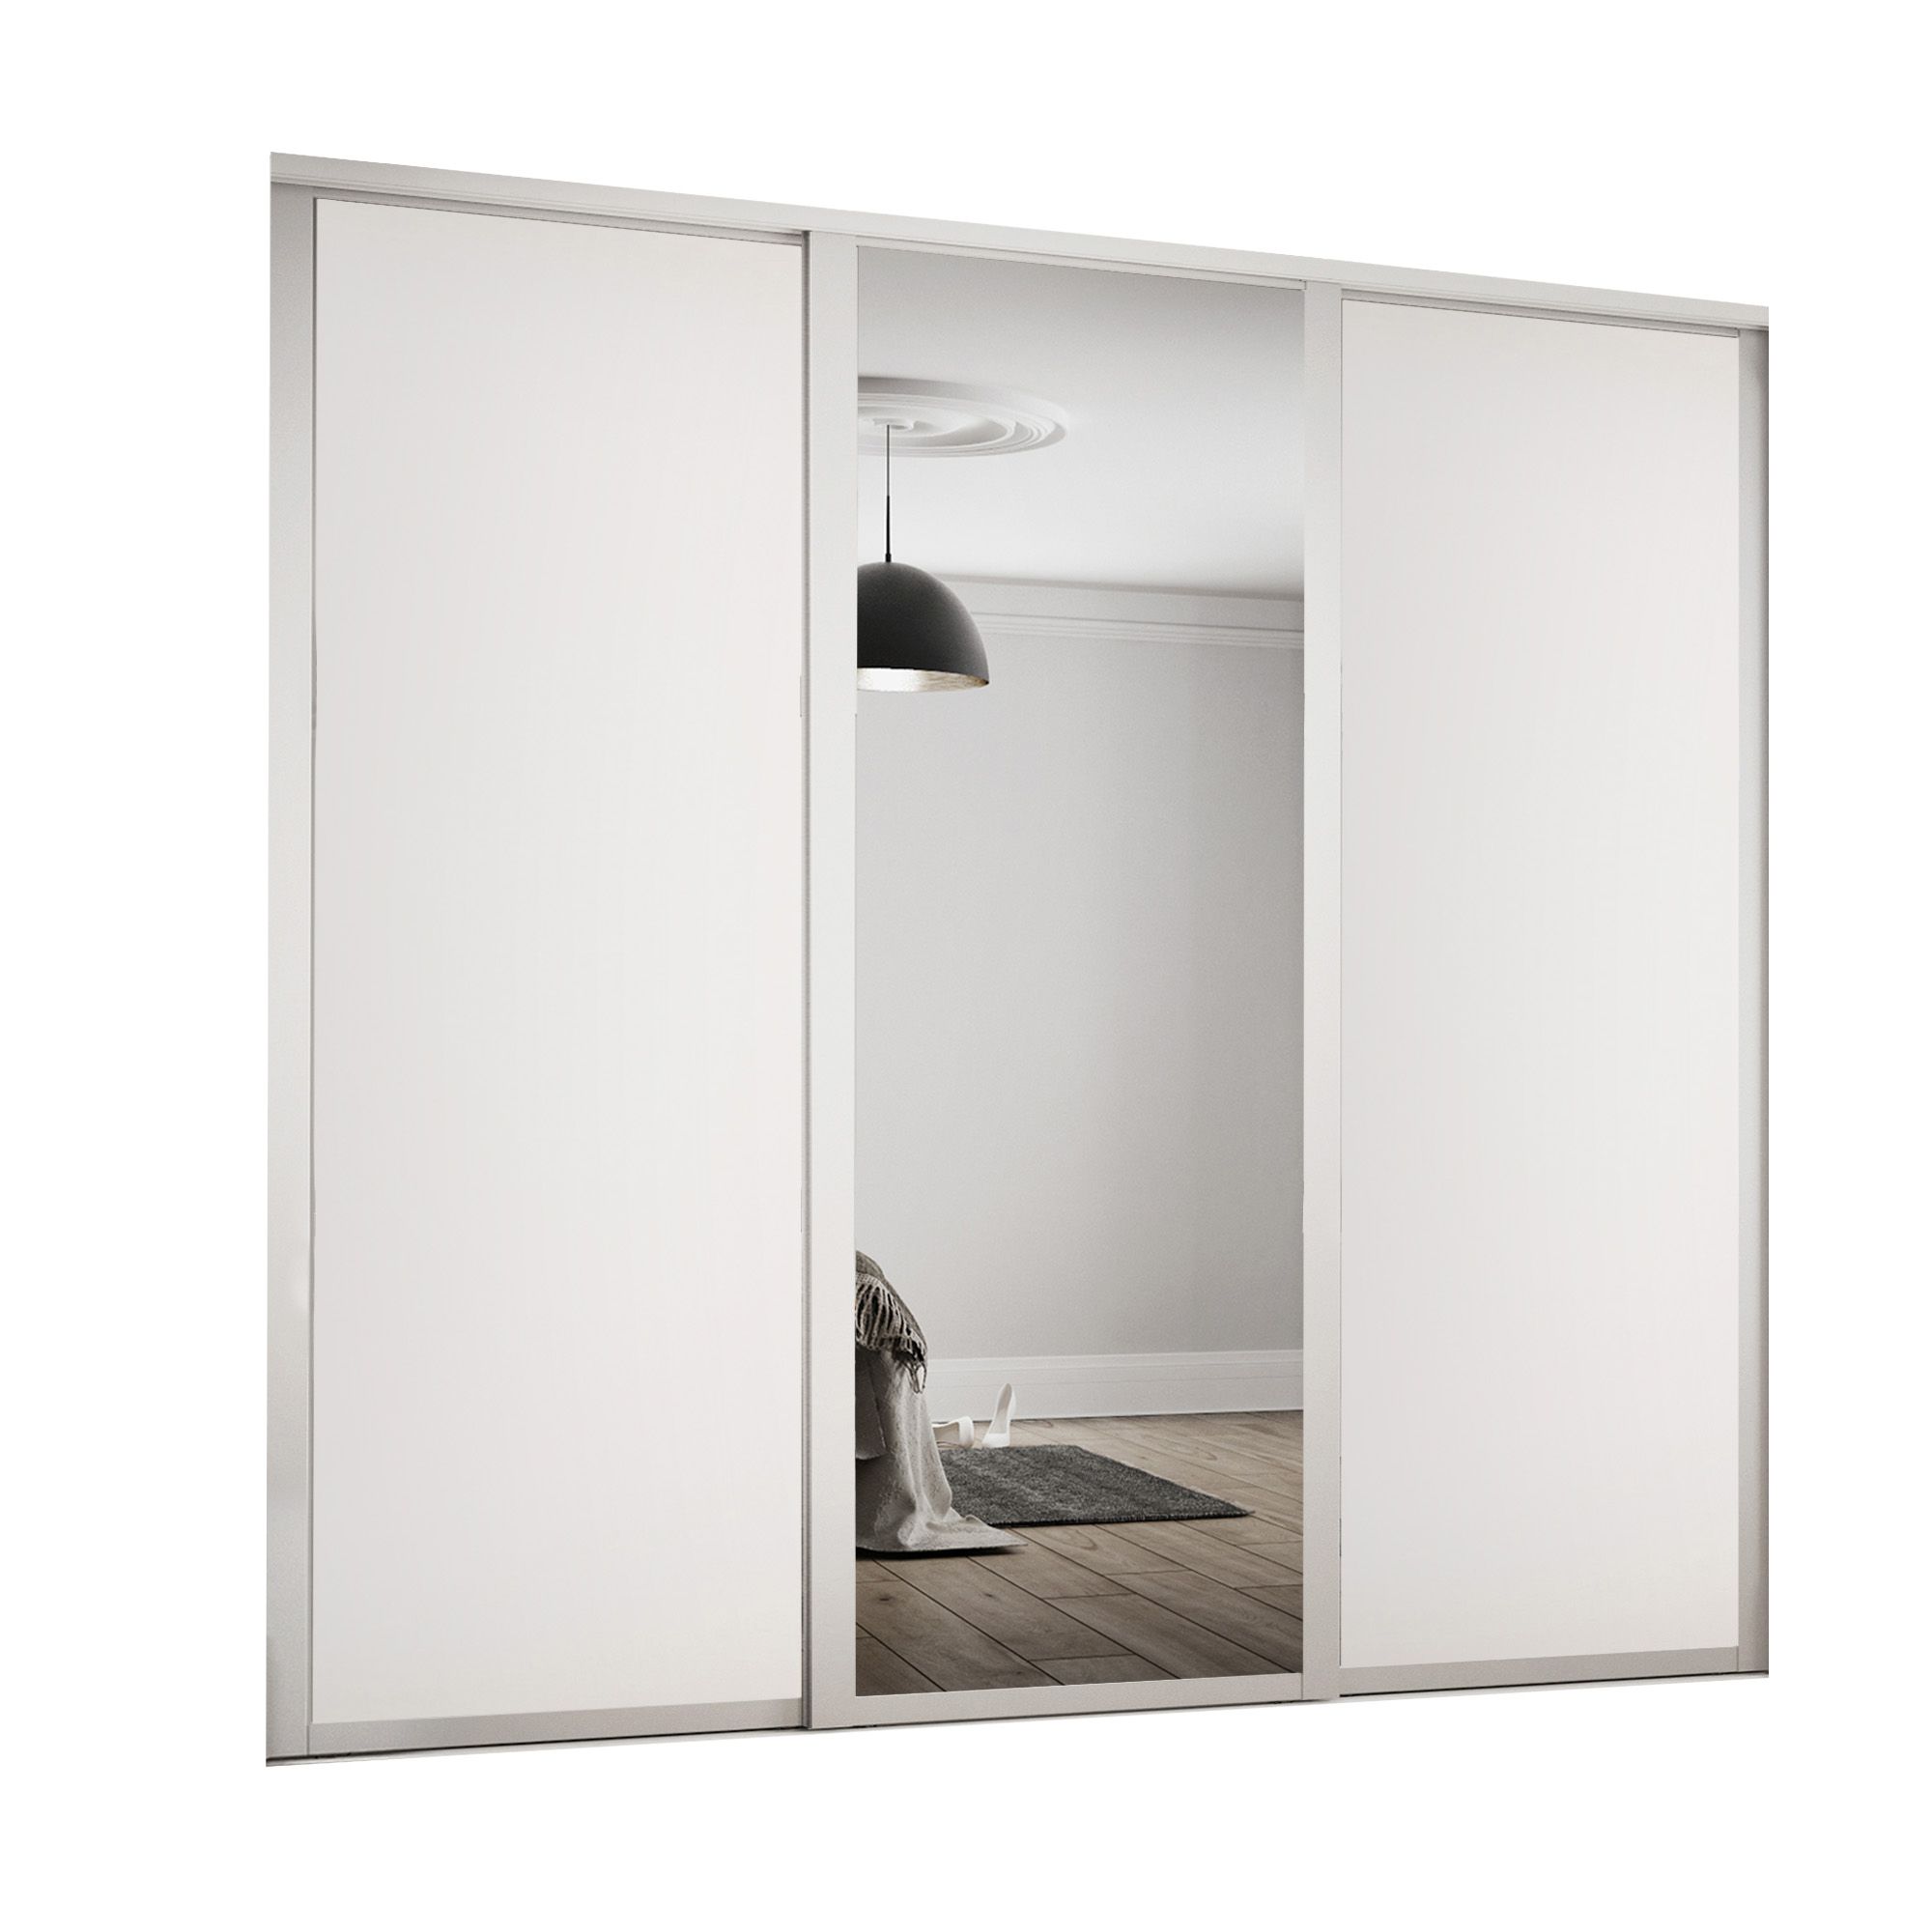 Panel Shaker With 1 mirror door White 3 door Sliding Wardrobe Door kit (H)2260mm (W)1680mm